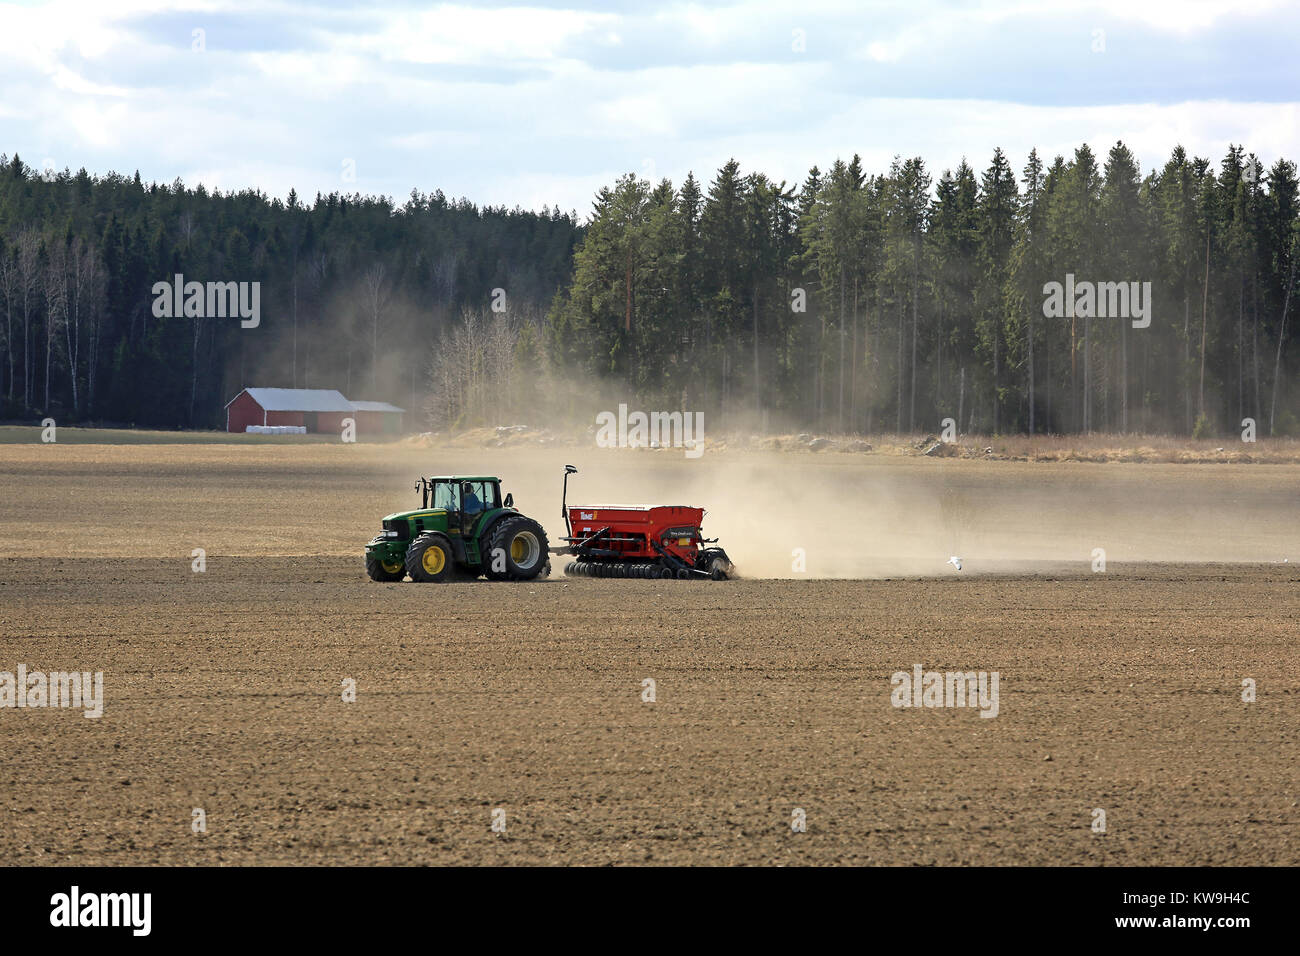 JOKIOINEN, Finnland - 7. Mai 2017: Landschaft der finnischen Landschaft mit John Deere 6830 Traktor und Tume Nova Combi 4000 seeder bei der Arbeit auf dem Feld bei sp Stockfoto